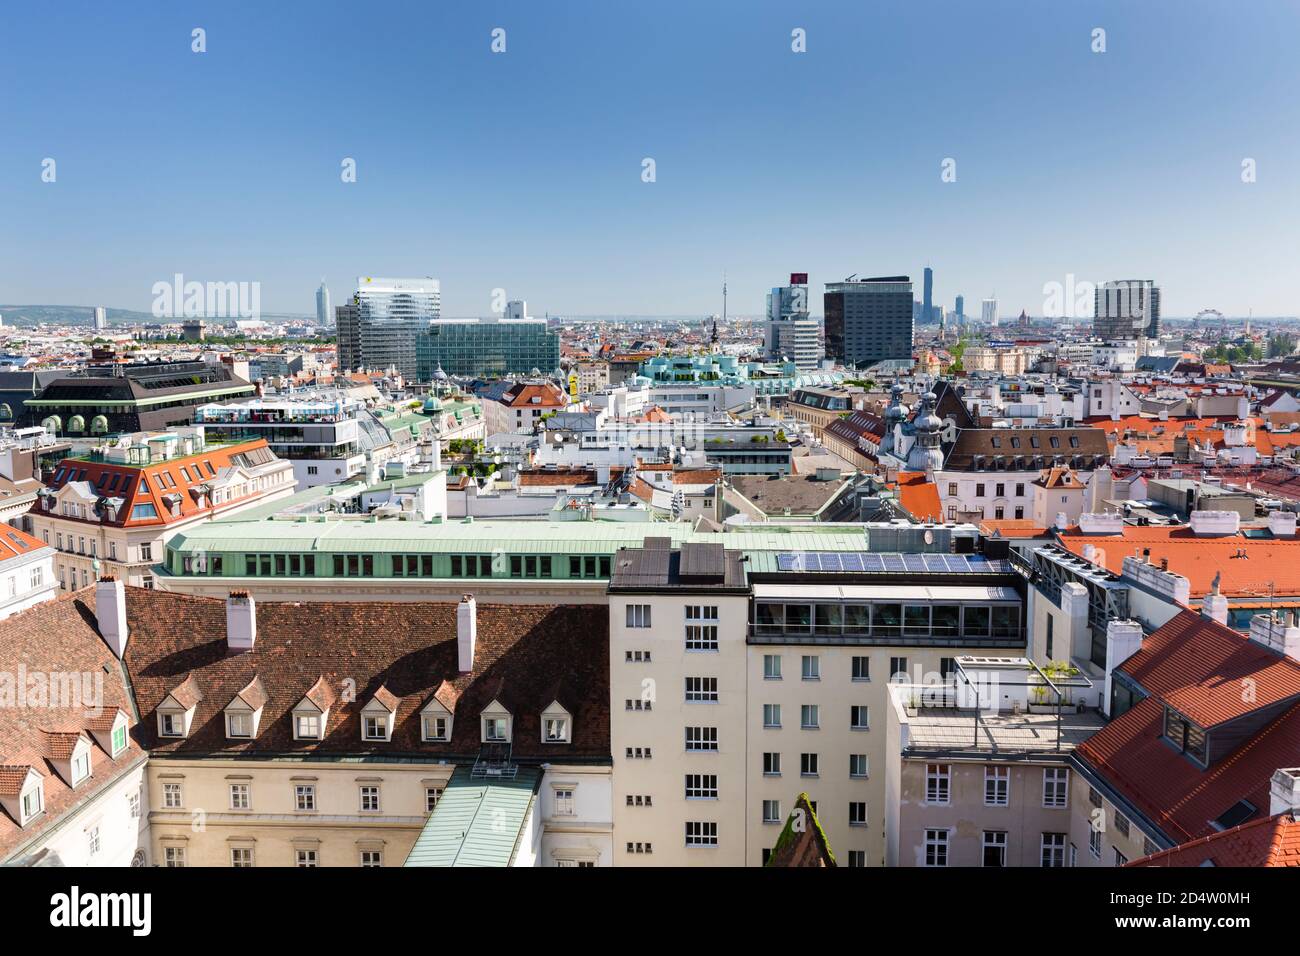 VIENNE - MAI 7 : vue de Vienne sur la ville de Donau en arrière-plan, Autriche le 7 mai 2018 Banque D'Images